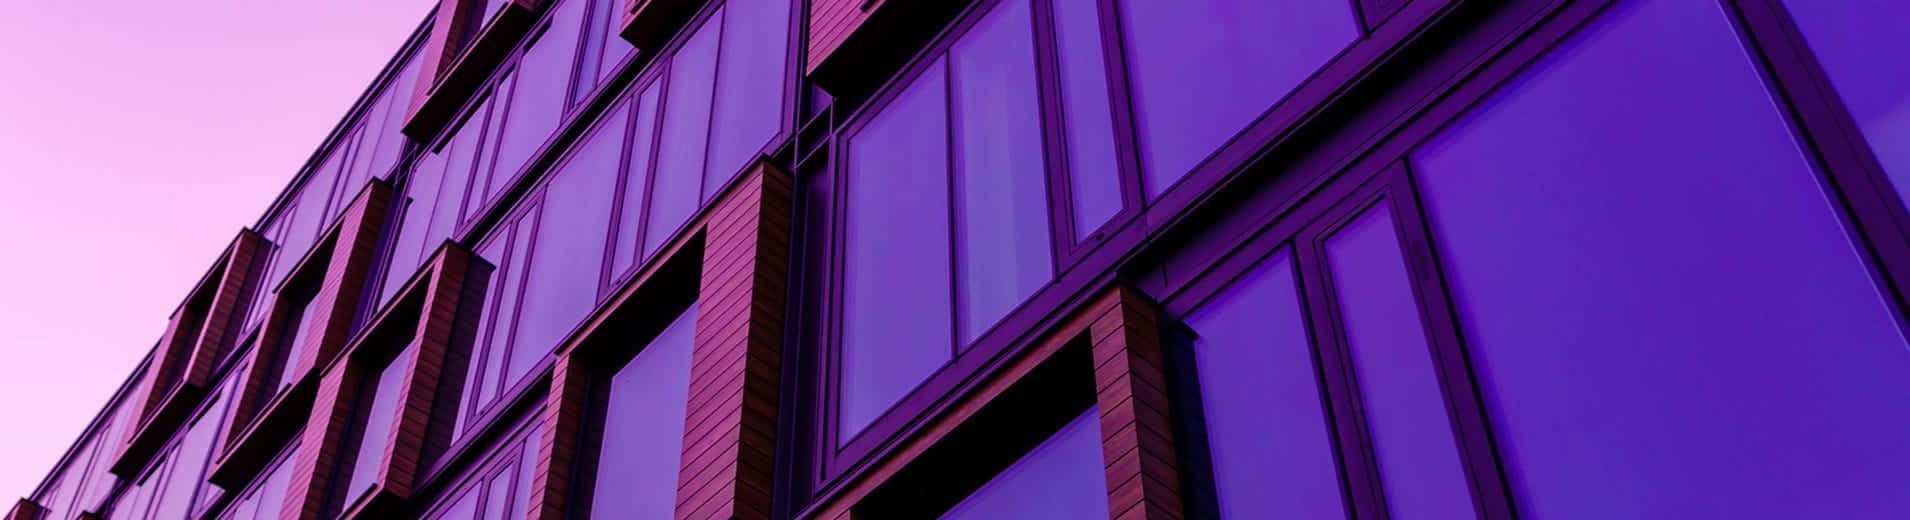 Modern_building_in_purple_light_N_2354